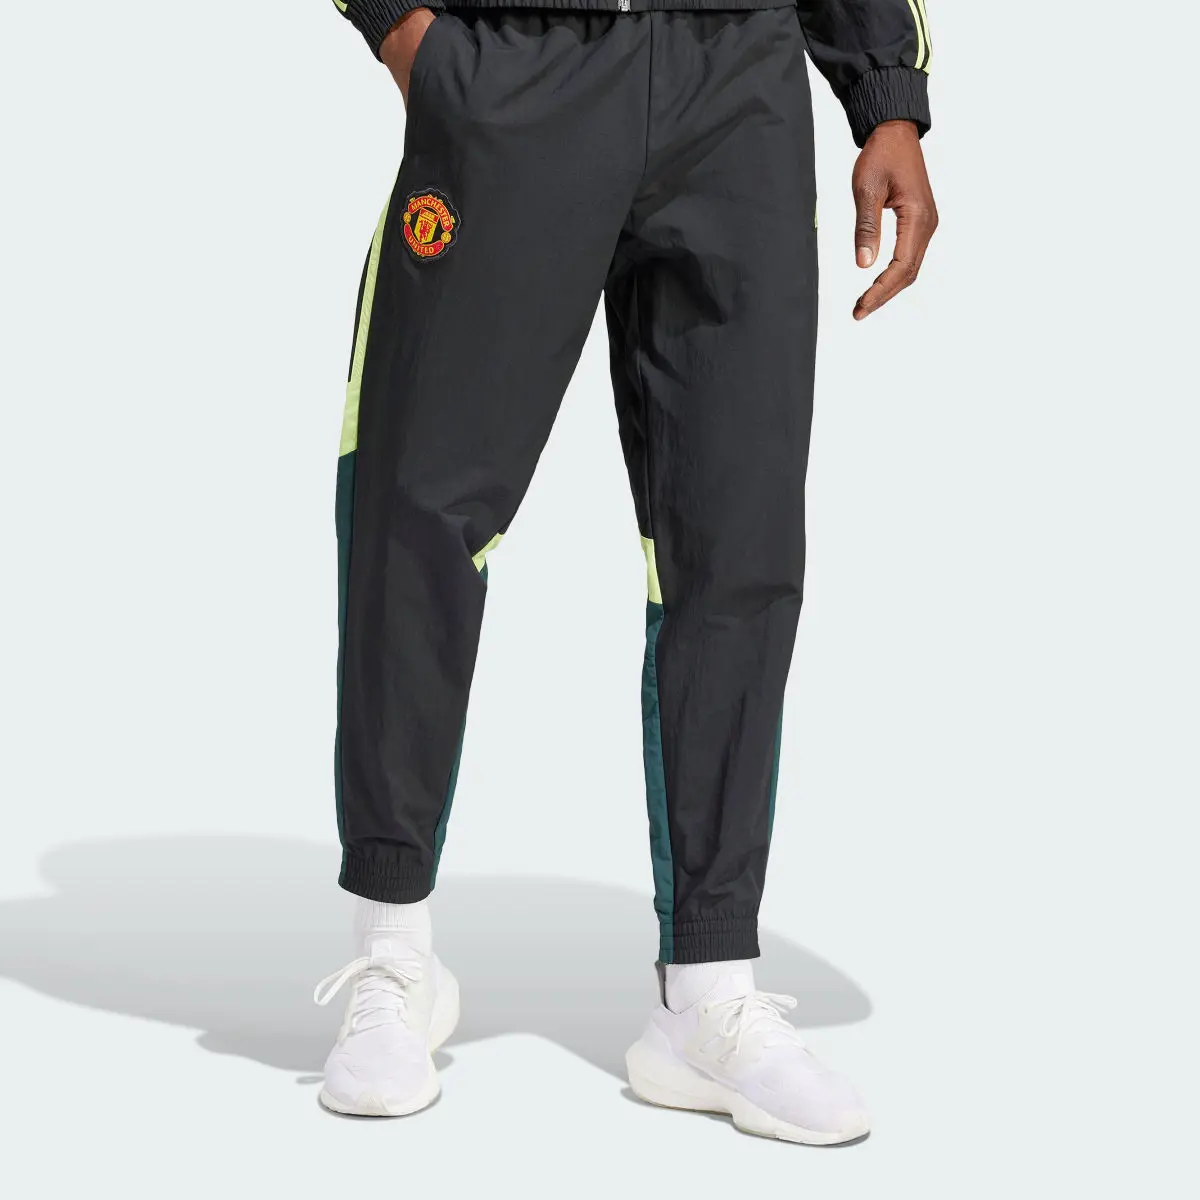 Adidas Calças do Manchester United. 1